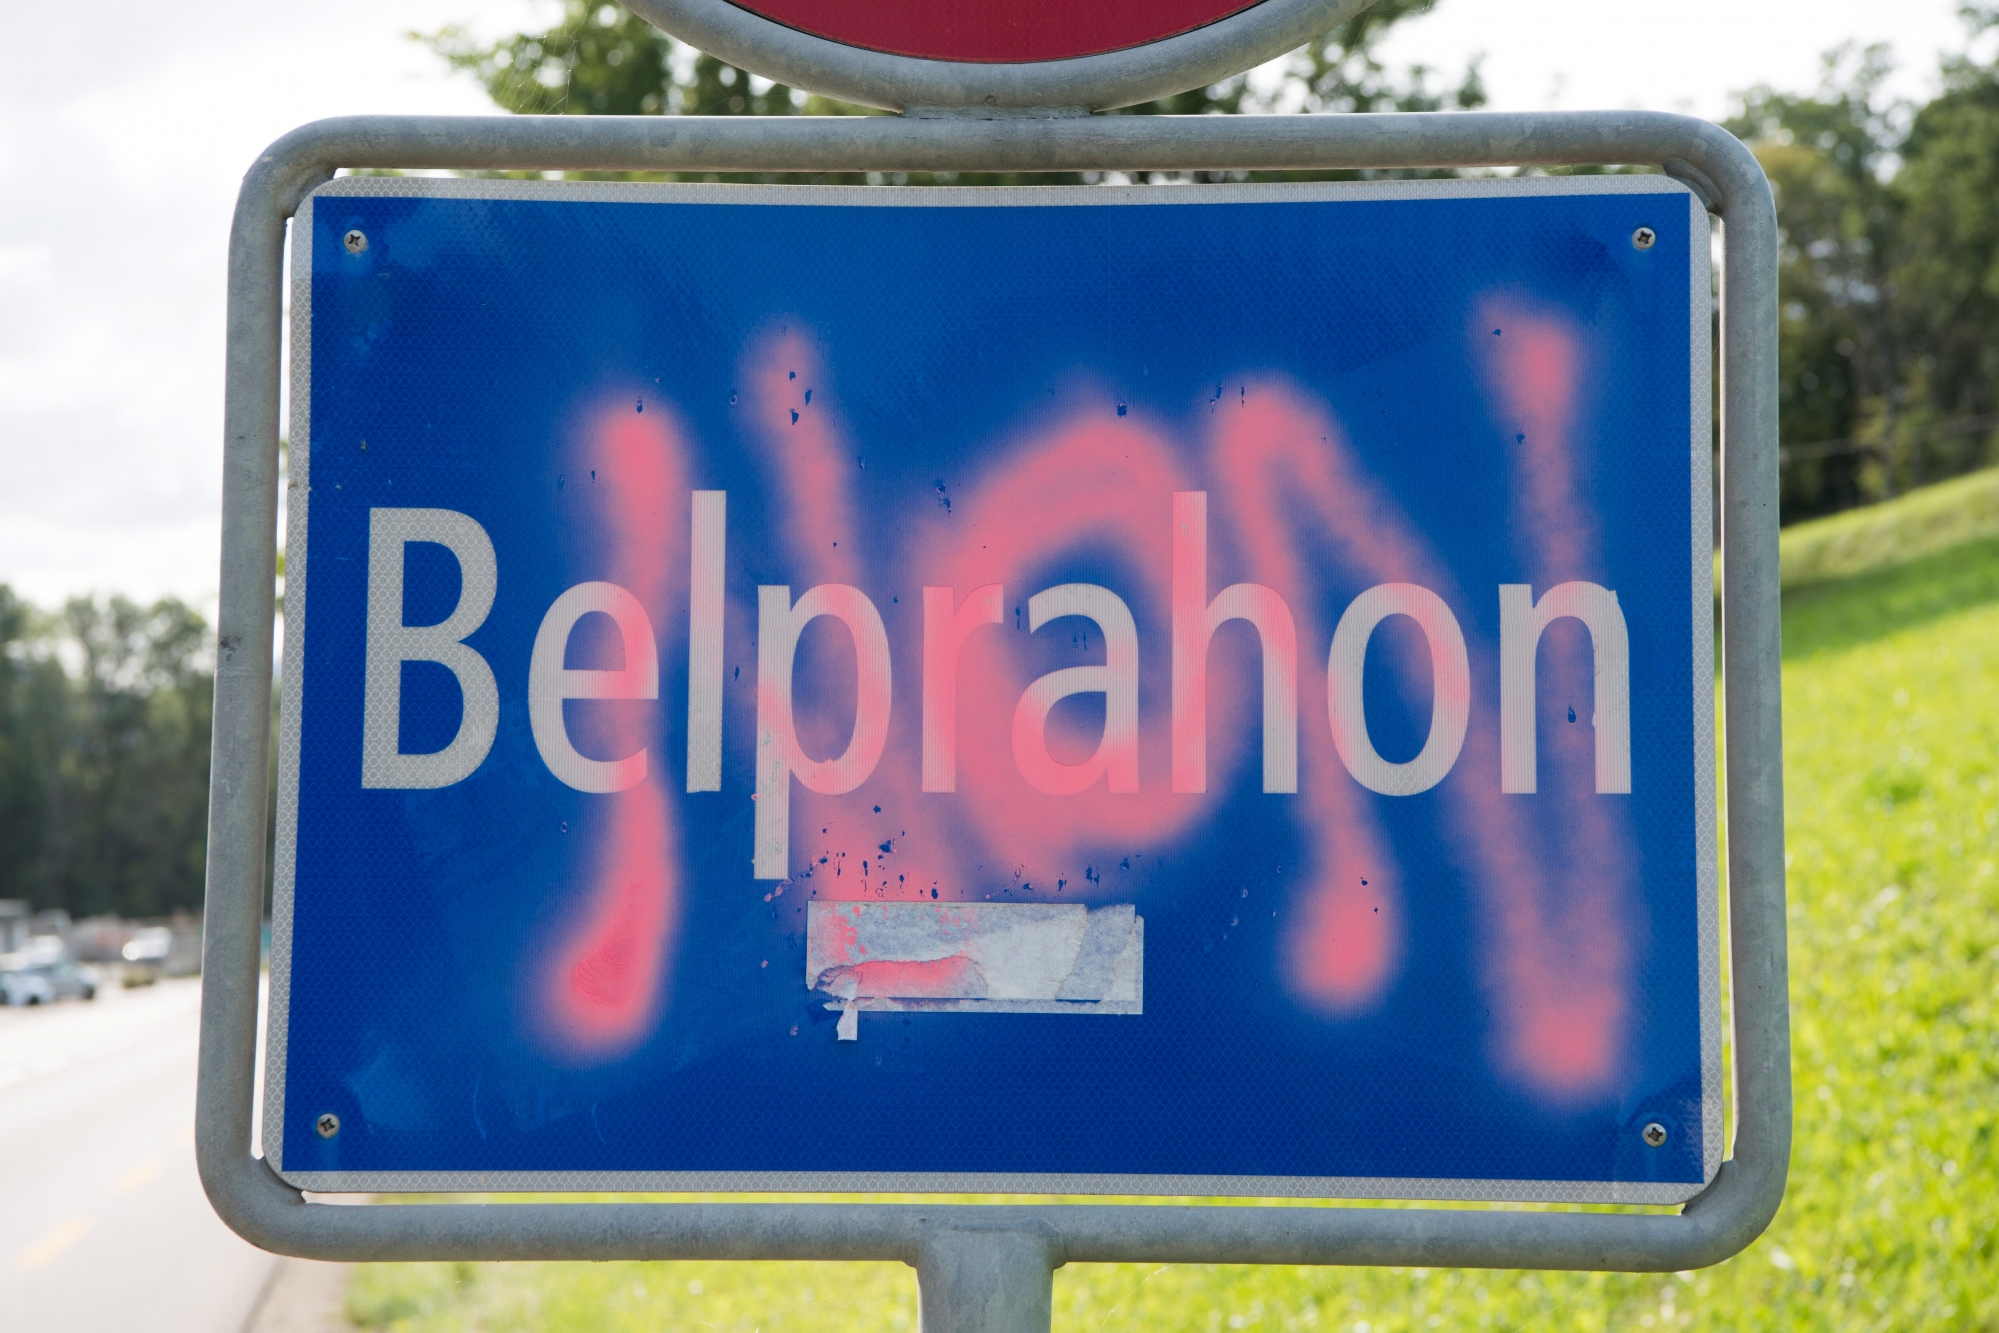 Un graffiti "NON" est photographie sur un panneau d'entree de localite due  village Belprahon ce jeudi 7 septembre 2017 a Belprahon. Les citoyens de Belprahon et de Sorvilier vont, selon toute vraisemblance, se prononcer le 17 septembre sur leur transfert dans le canton du Jura. (KEYSTONE/Anthony Anex)  SCHWEIZ BELPRAHON